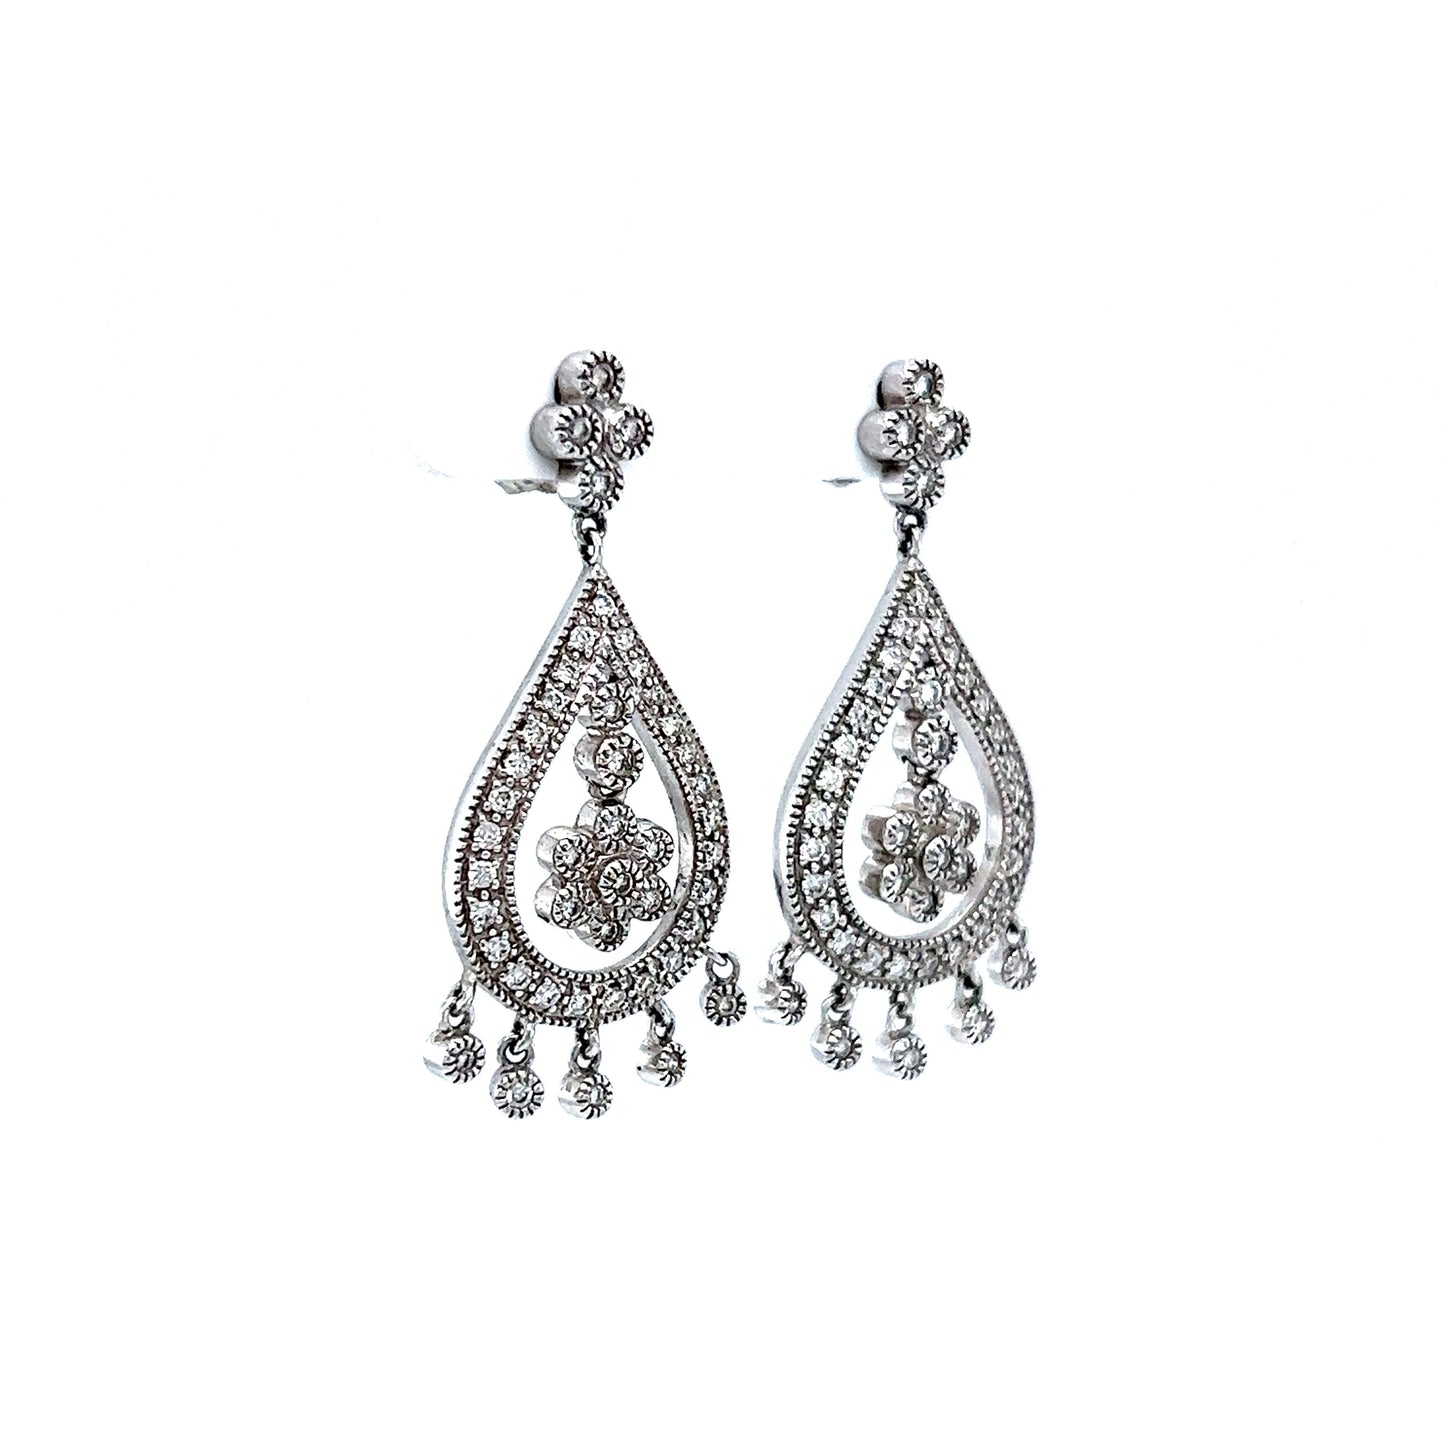 Antique Style Chandelier Diamond Dangle Earrings in 14k White Gold